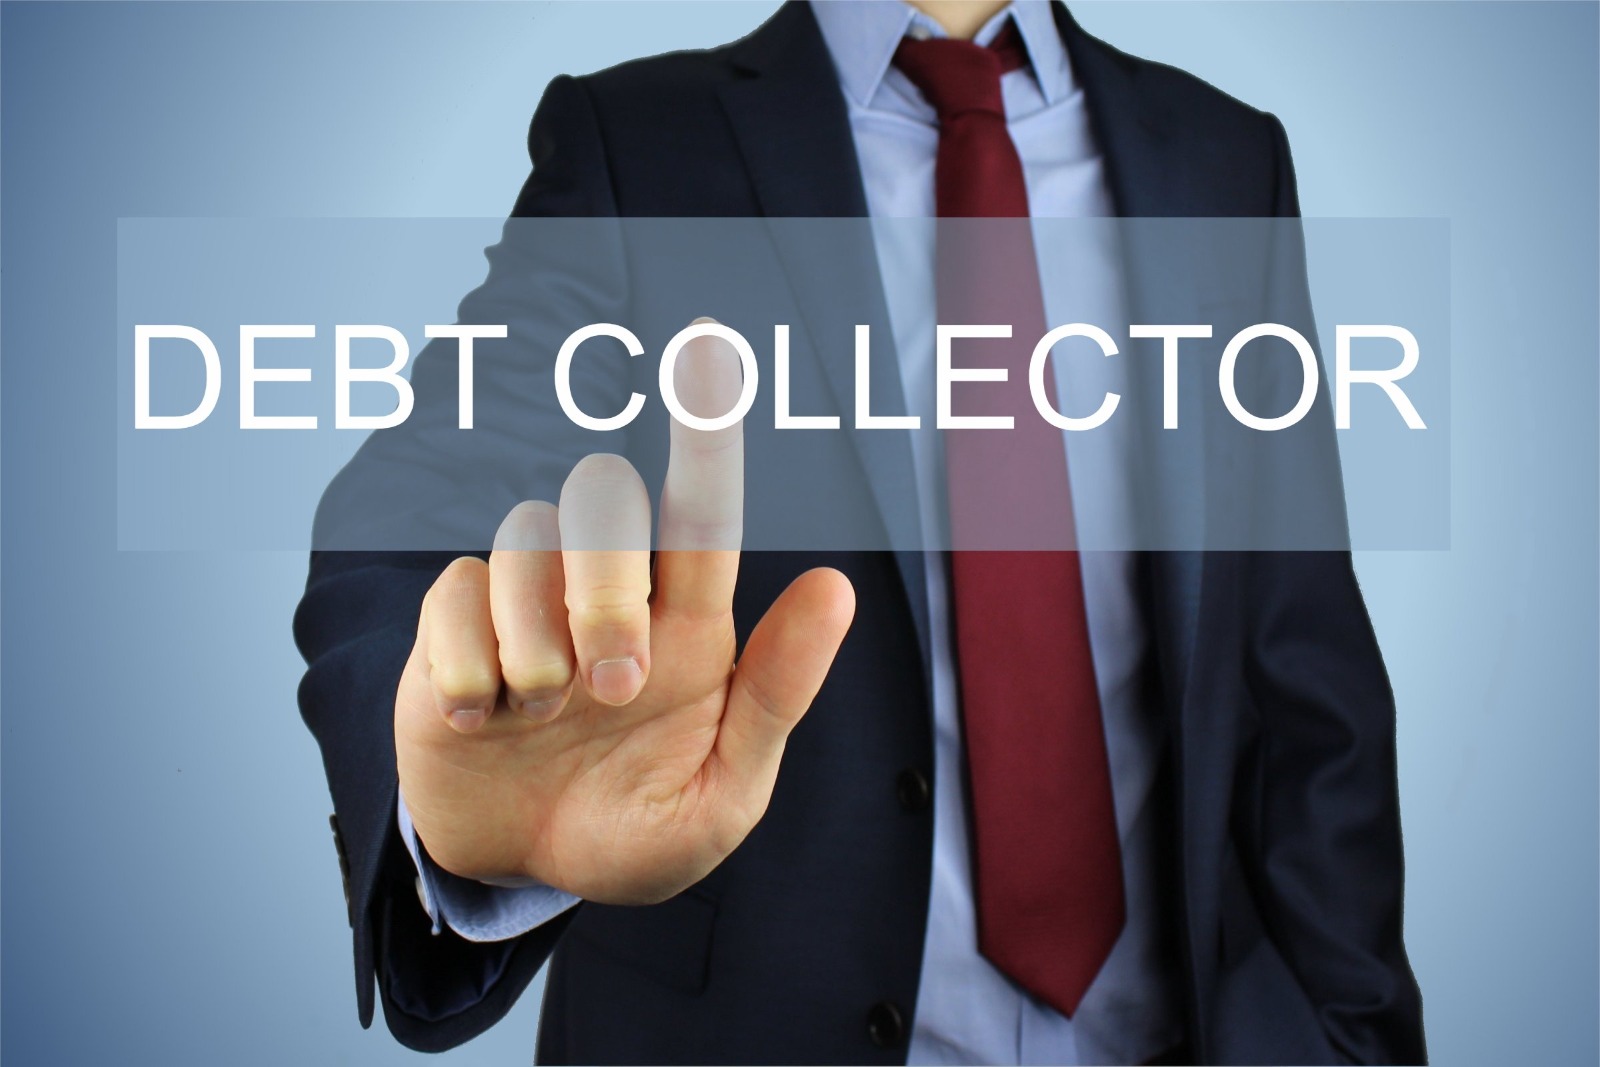 Pesan untuk Debt Collector, Menagih Utang saat Orang Tidak Punya Uang Katanya Hukumnya Haram